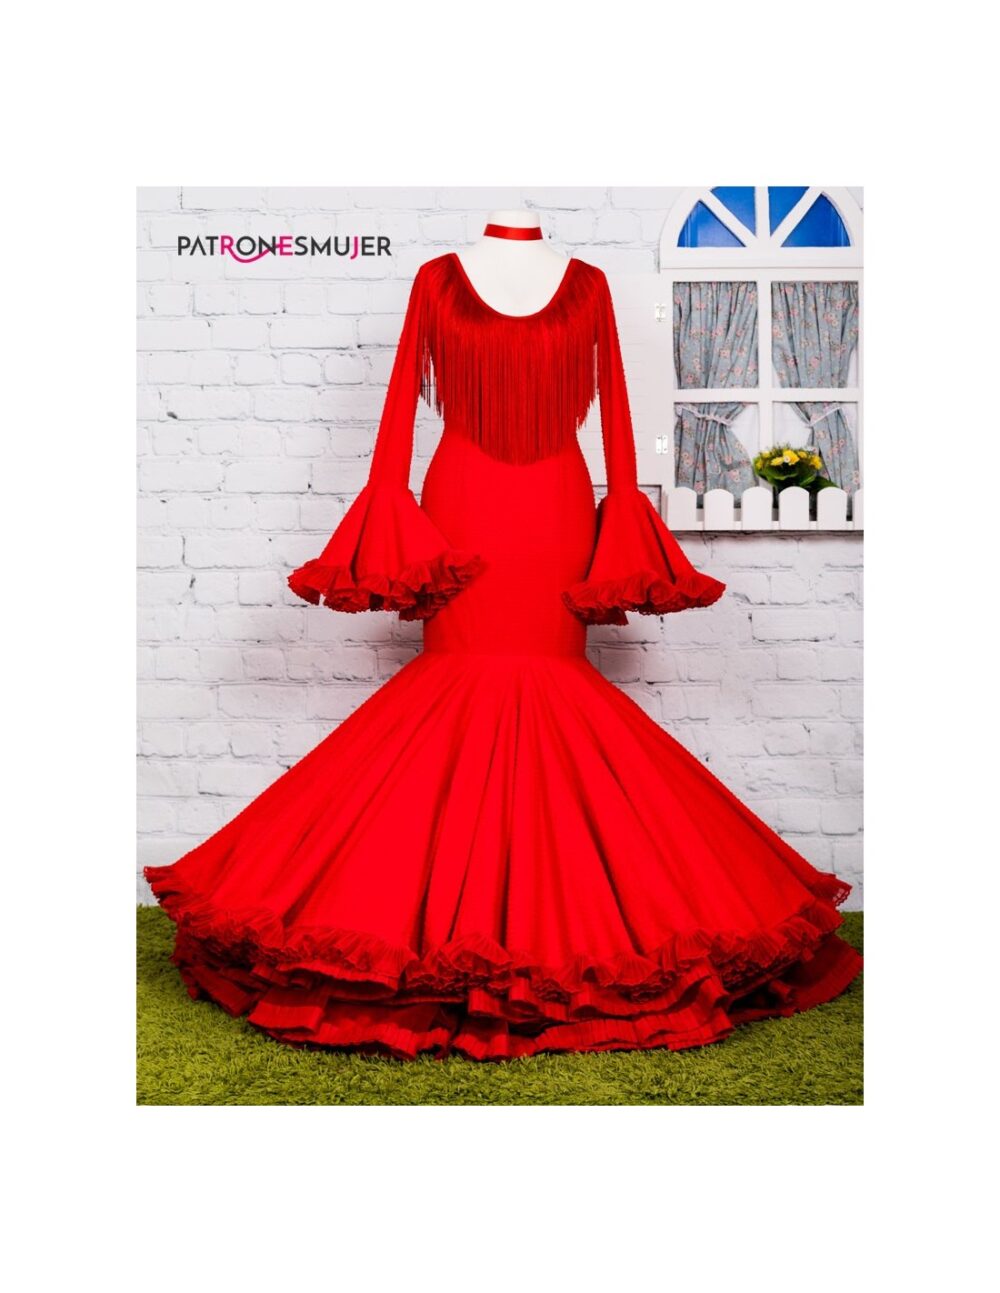 Patrón de vestido flamenco clavel de mujer